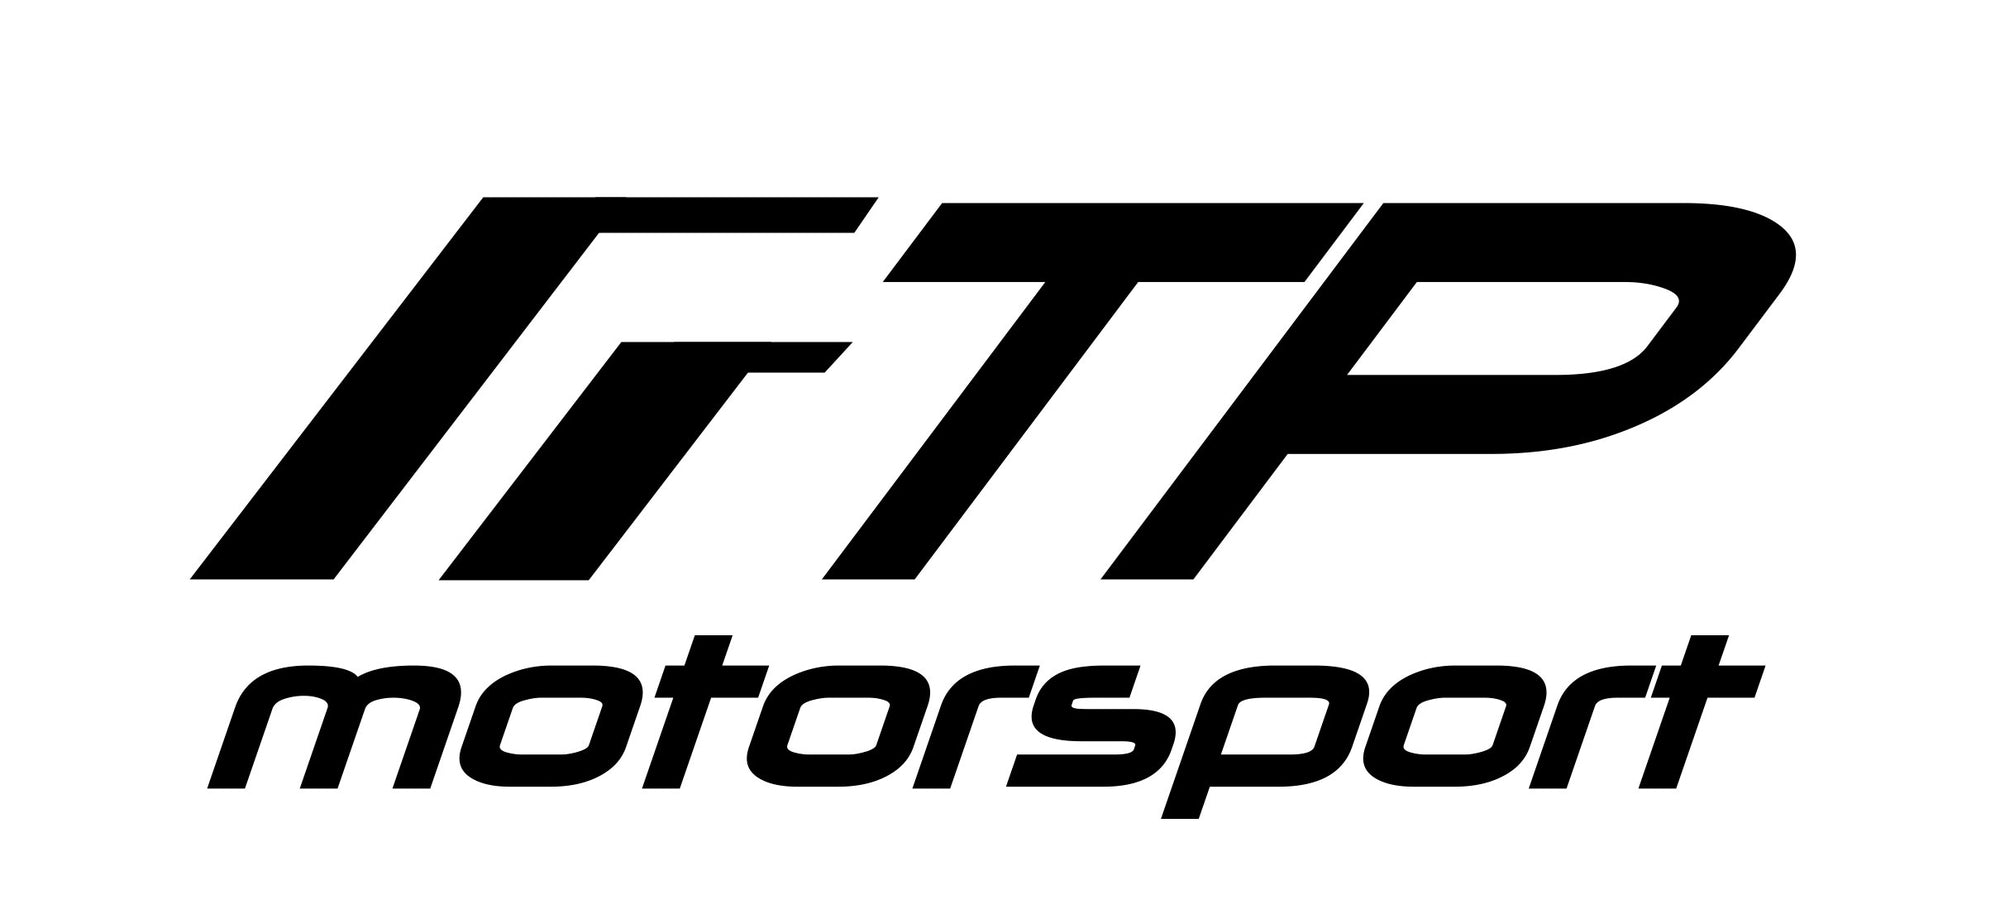 FTP Motorsport